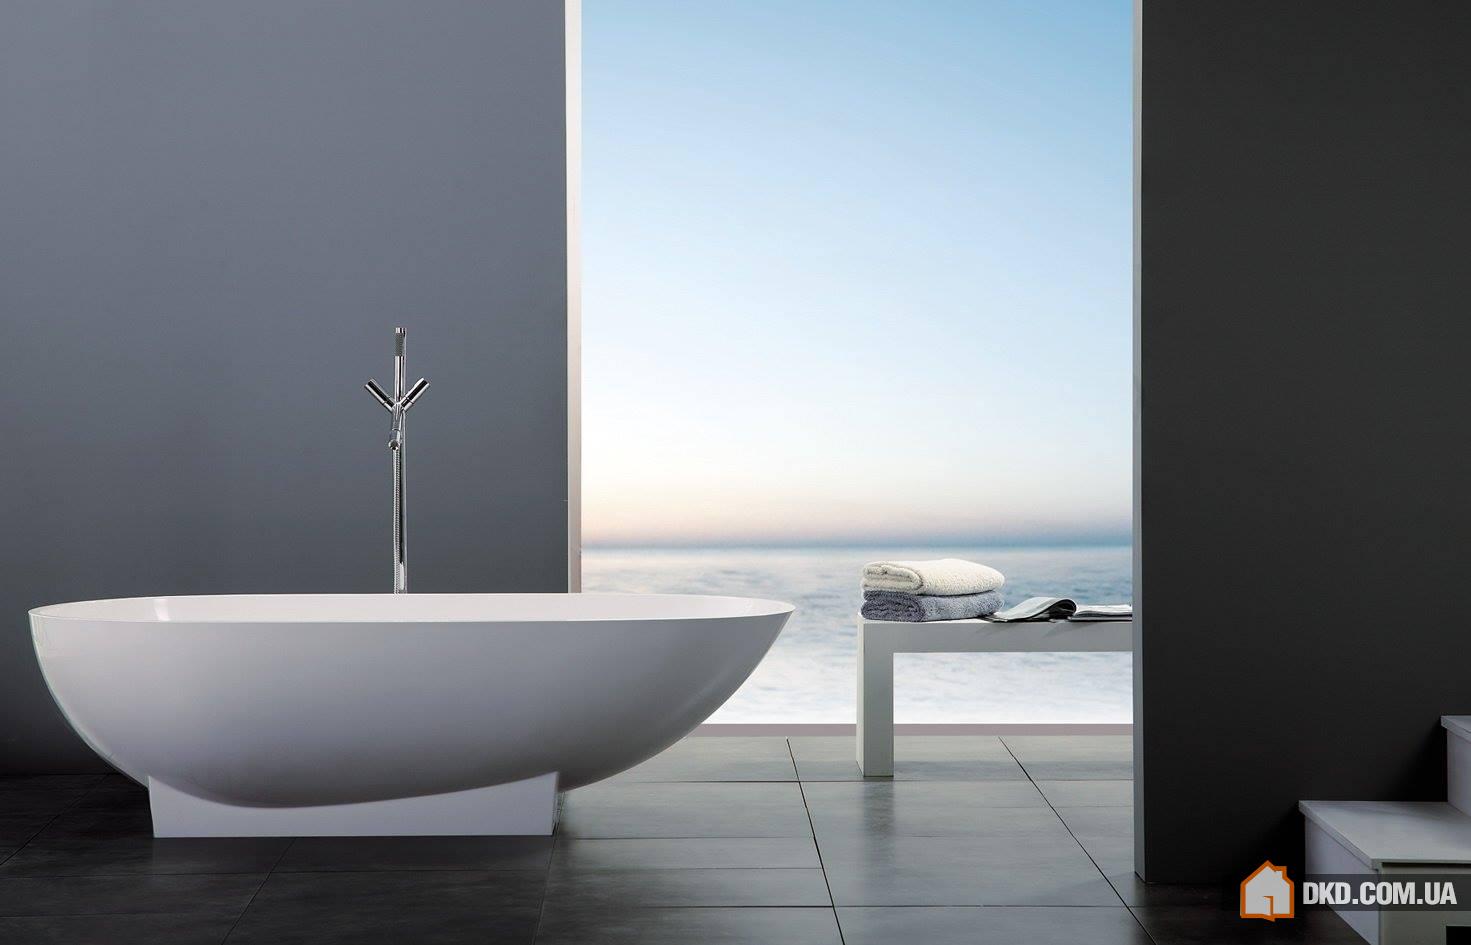 Роскошная простота - минимализм в ванной